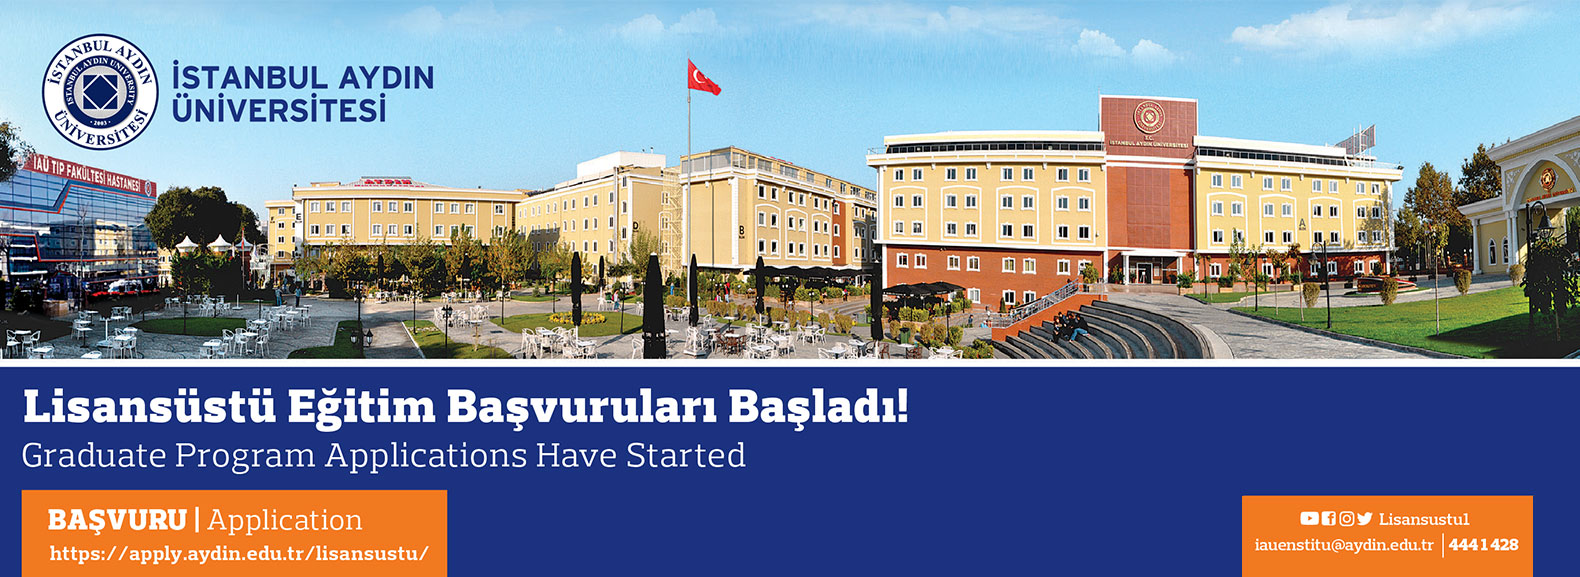 istanbul üniversitesi enstitüsü